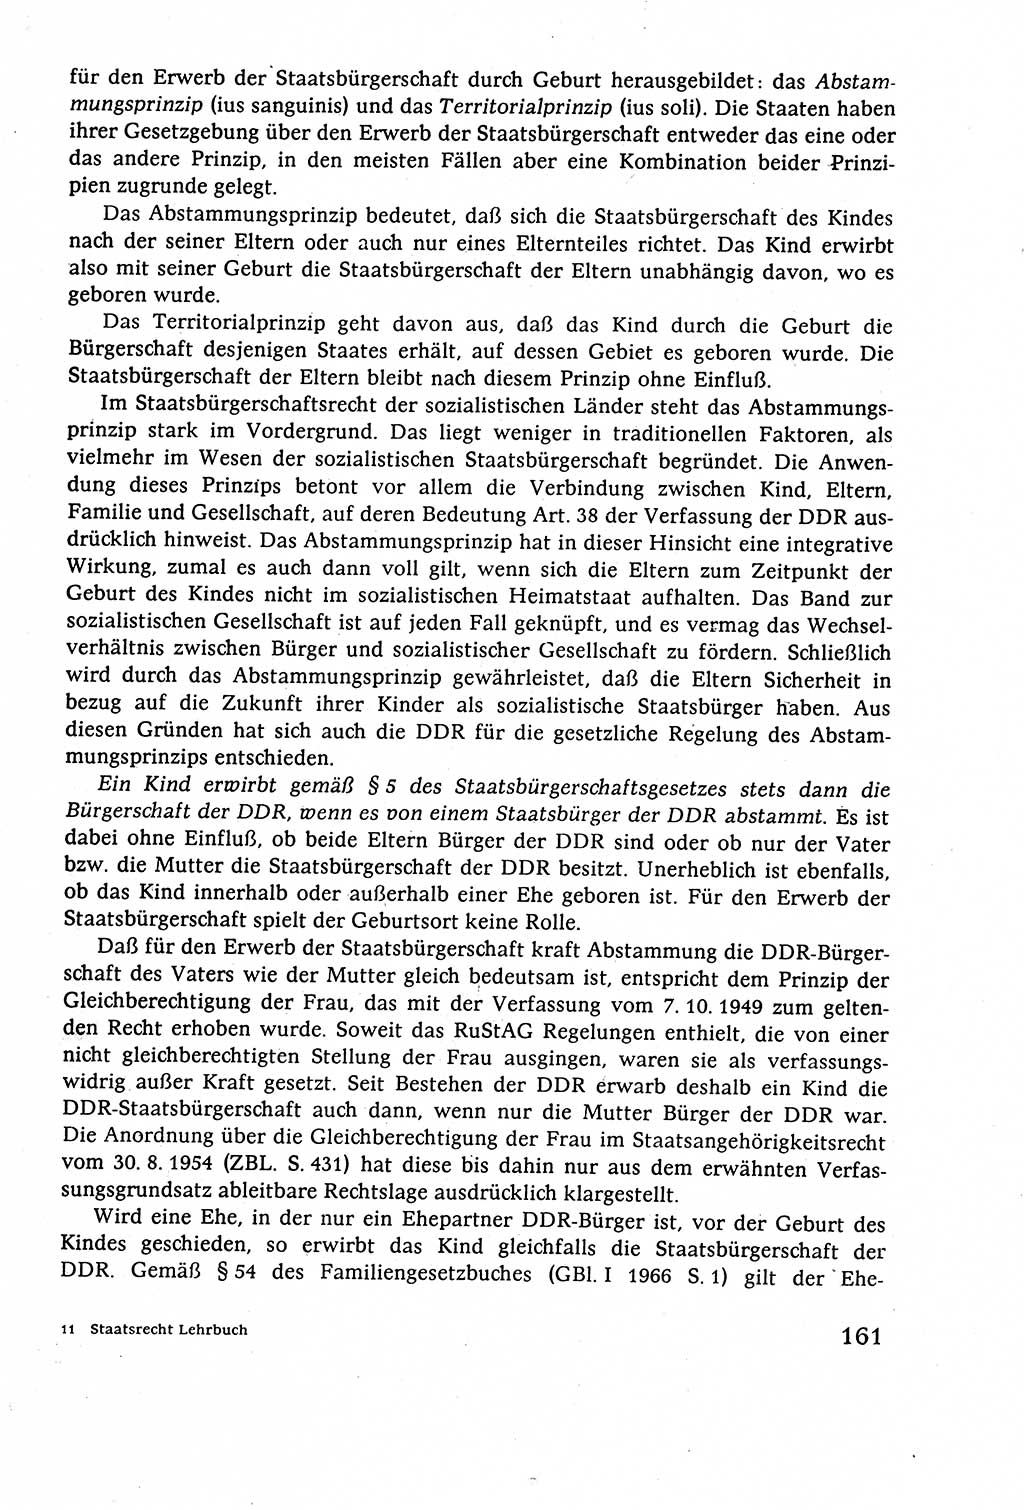 Staatsrecht der DDR (Deutsche Demokratische Republik), Lehrbuch 1977, Seite 161 (St.-R. DDR Lb. 1977, S. 161)